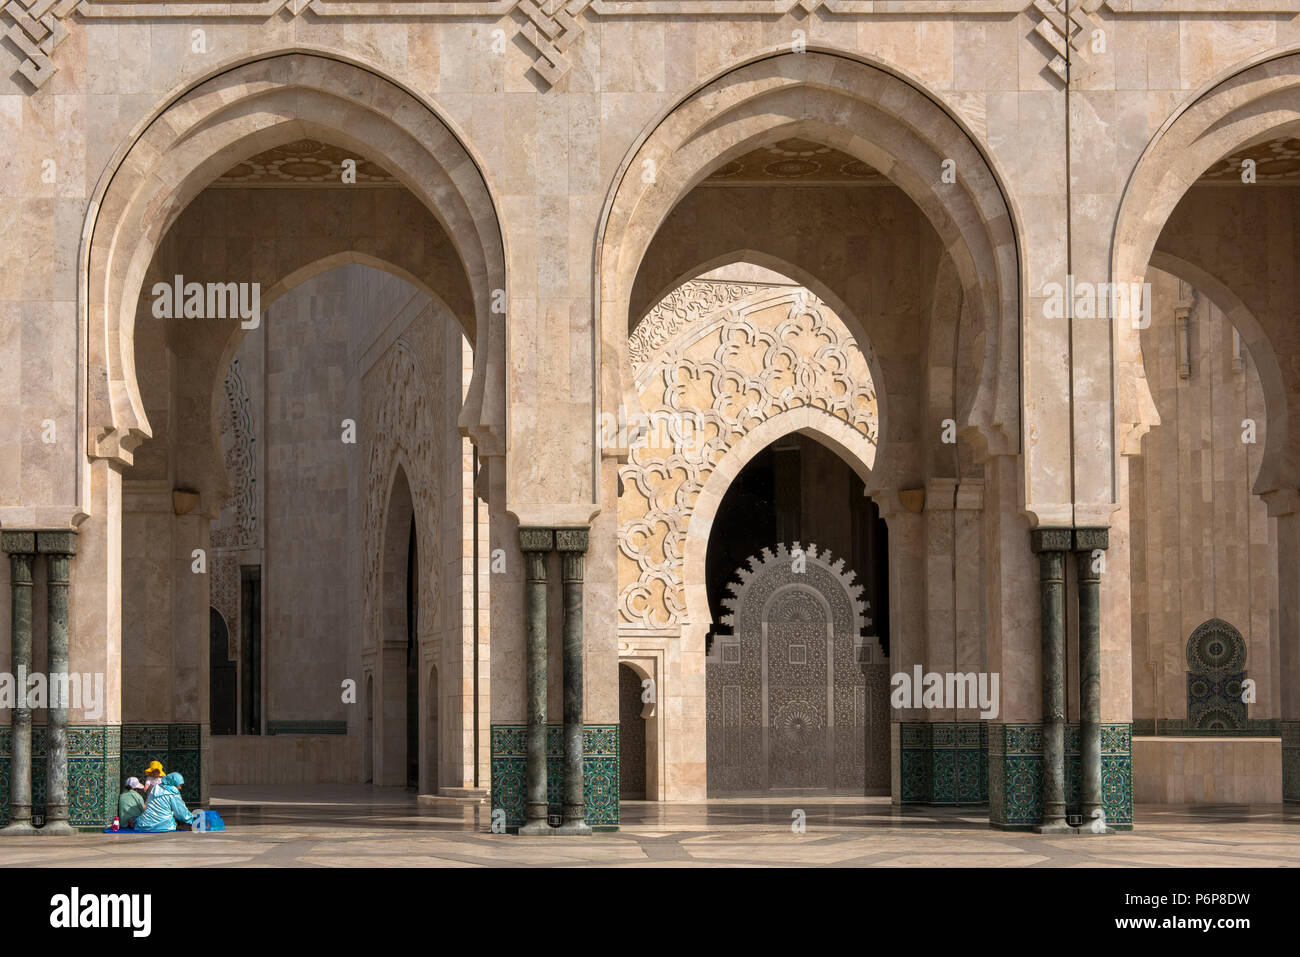 Famille installÃ©e pour une pausa dominicale au piede la colonade du pí©ristyle de la MosquÃ©e Hassan II. Casablanca Maroc. Foto Stock